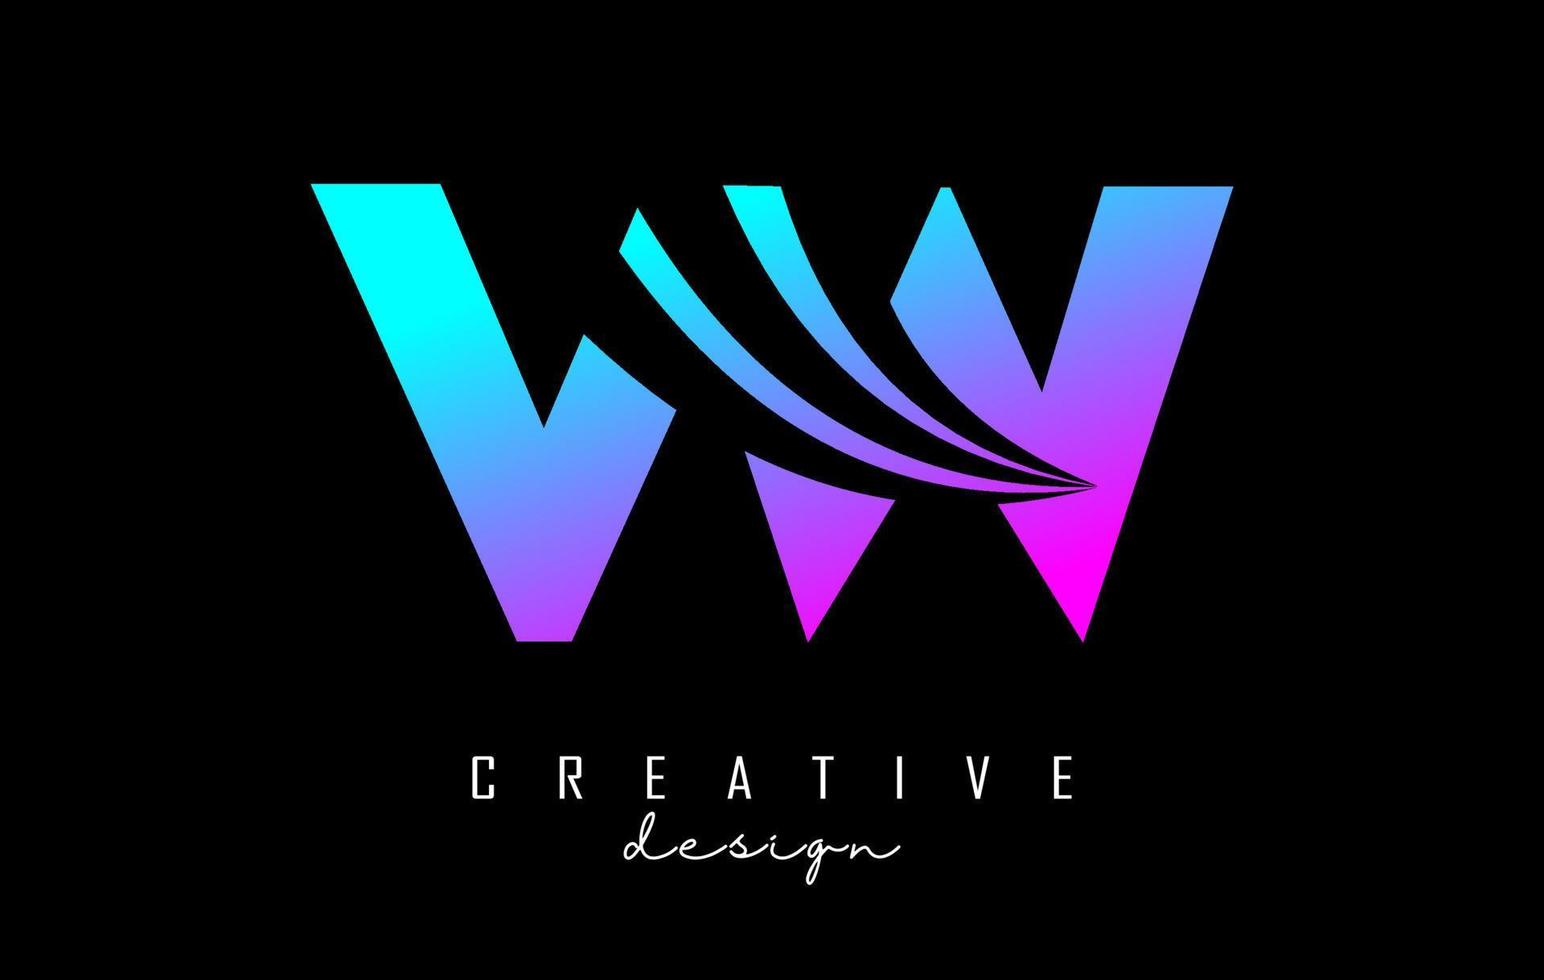 lettere colorate creative logo vw vw con linee guida e concept design stradale. lettere con disegno geometrico. vettore